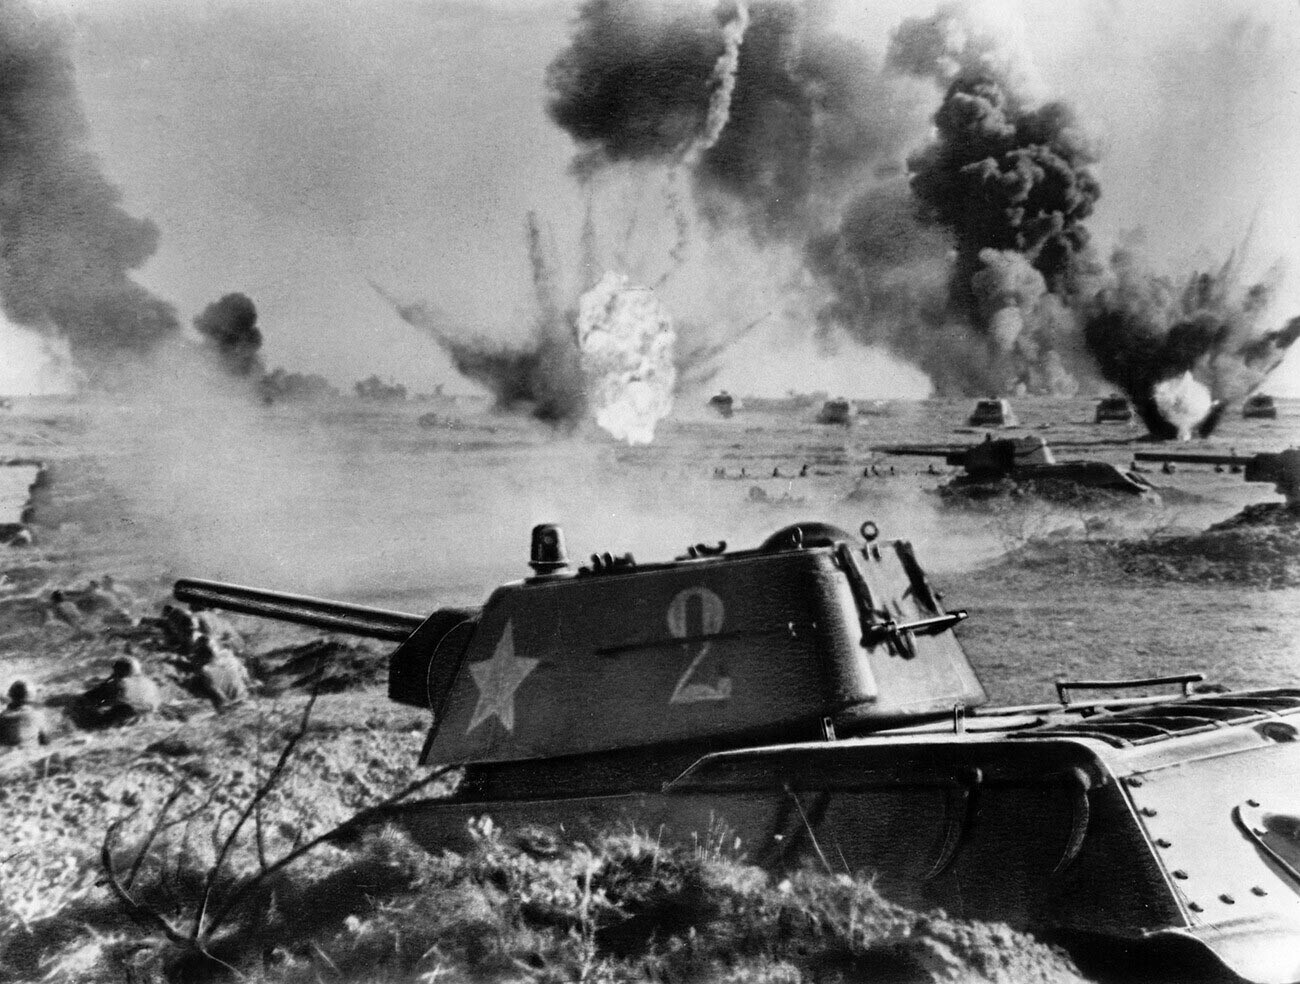 Schlacht von Stalingrad, sowjetische T-34-Panzer in der Schlacht, 1942 oder 1943.